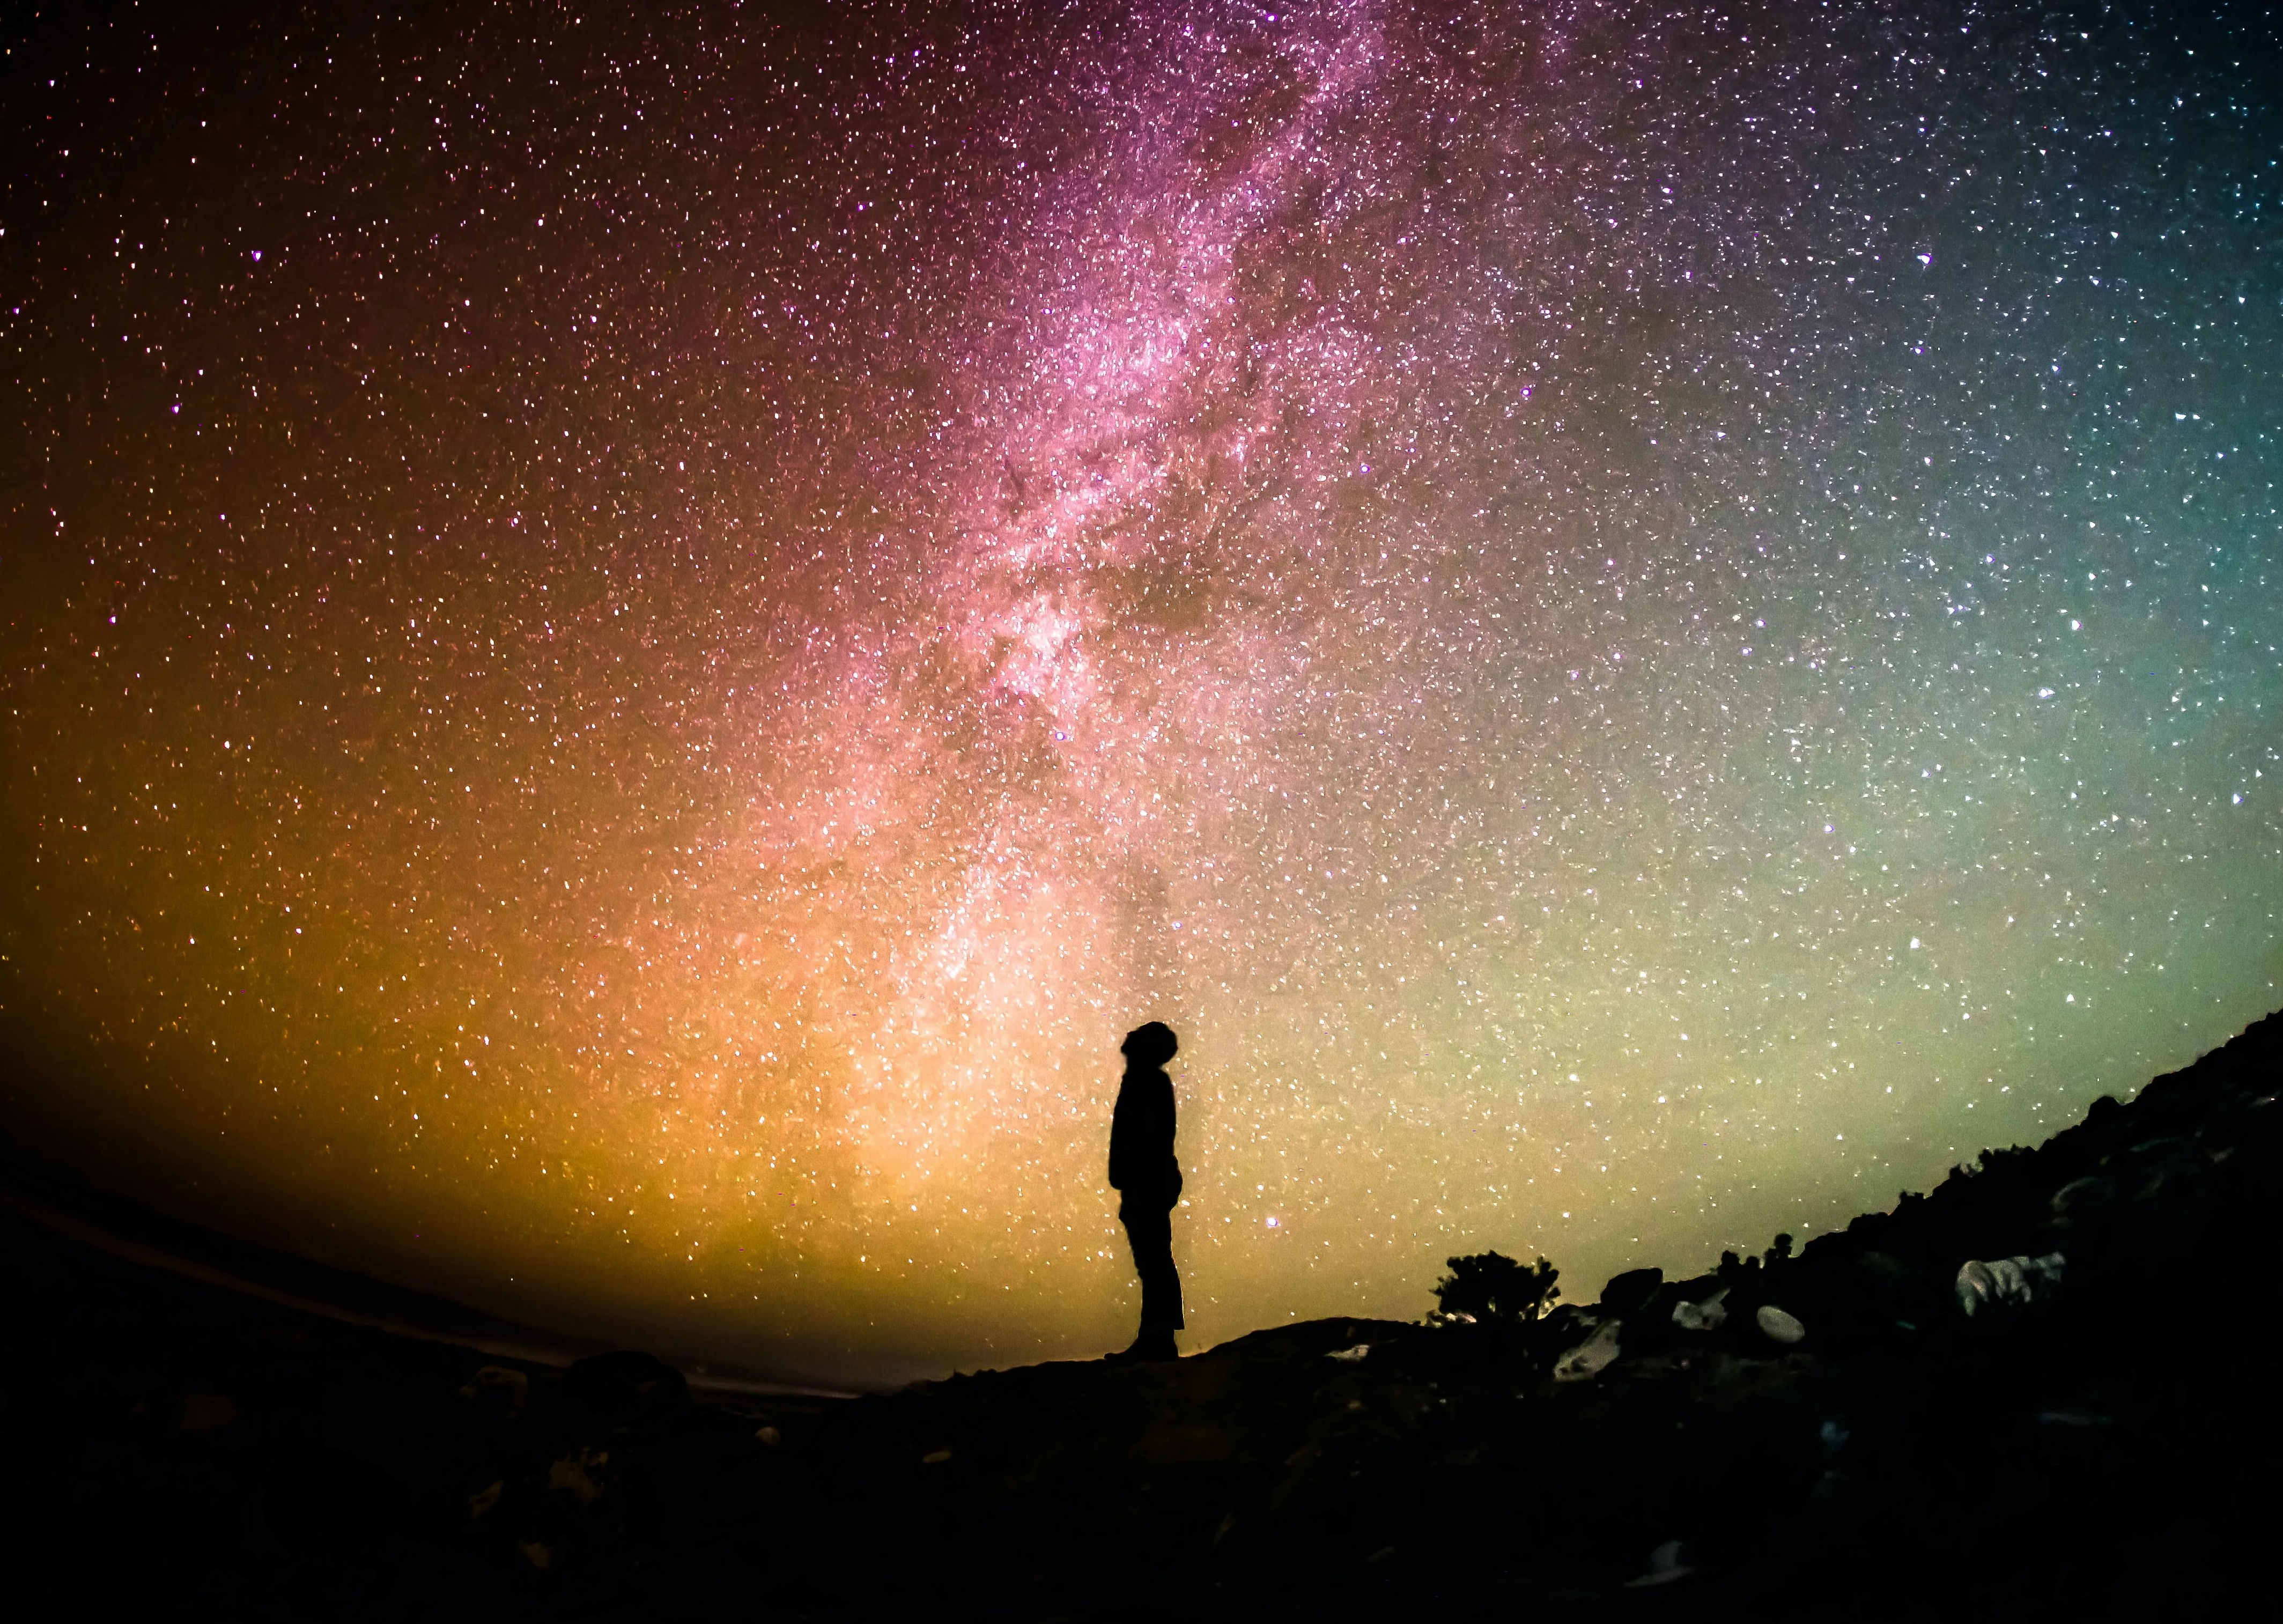 Das Bild zeigt einen Menschen der hoch in den Sternenhimmel schaut.  Urheber ist Greg Rakozy der das Bild über Unsplash zur Verfügung gestellt hat. https://unsplash.com/de/fotos/oMpAz-DN-9I